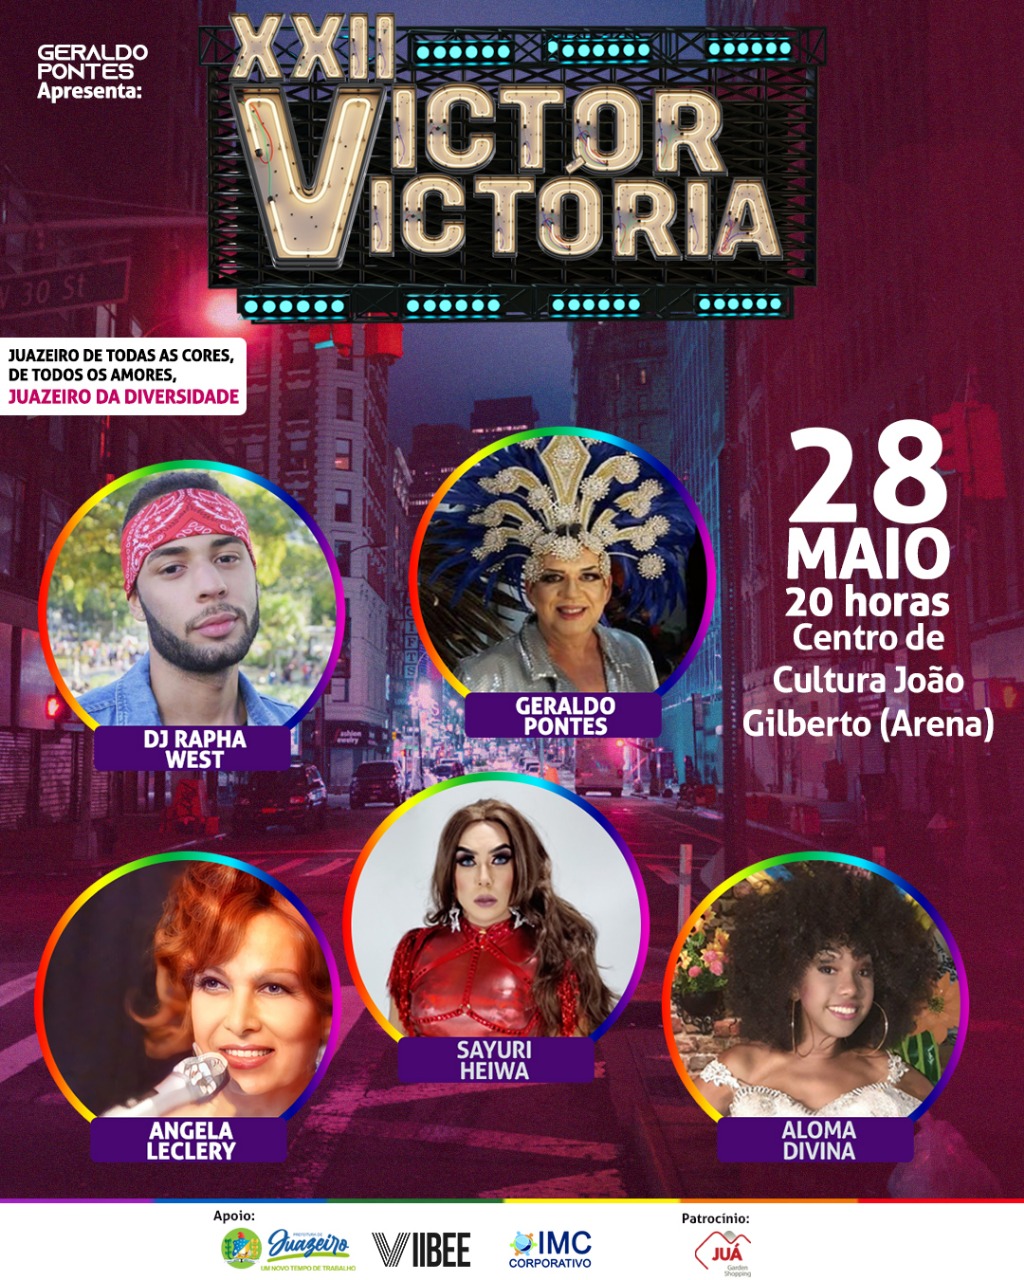 Concurso de Beleza Victor Victoria acontecerá neste sábado em Juazeiro